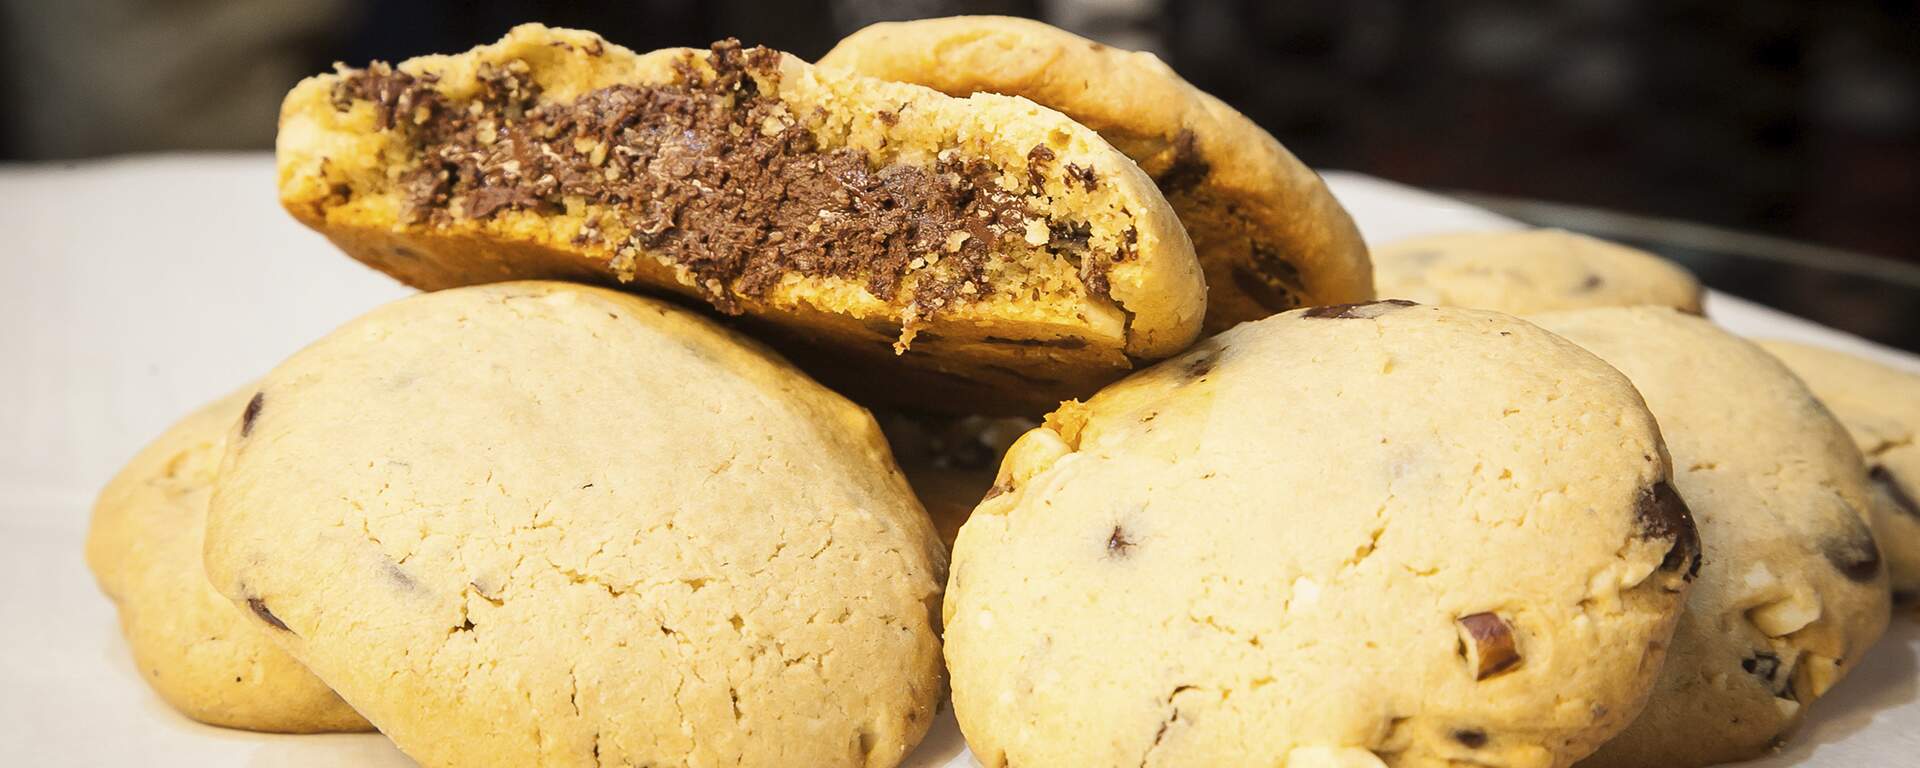 Cookies de chocolate com castanha